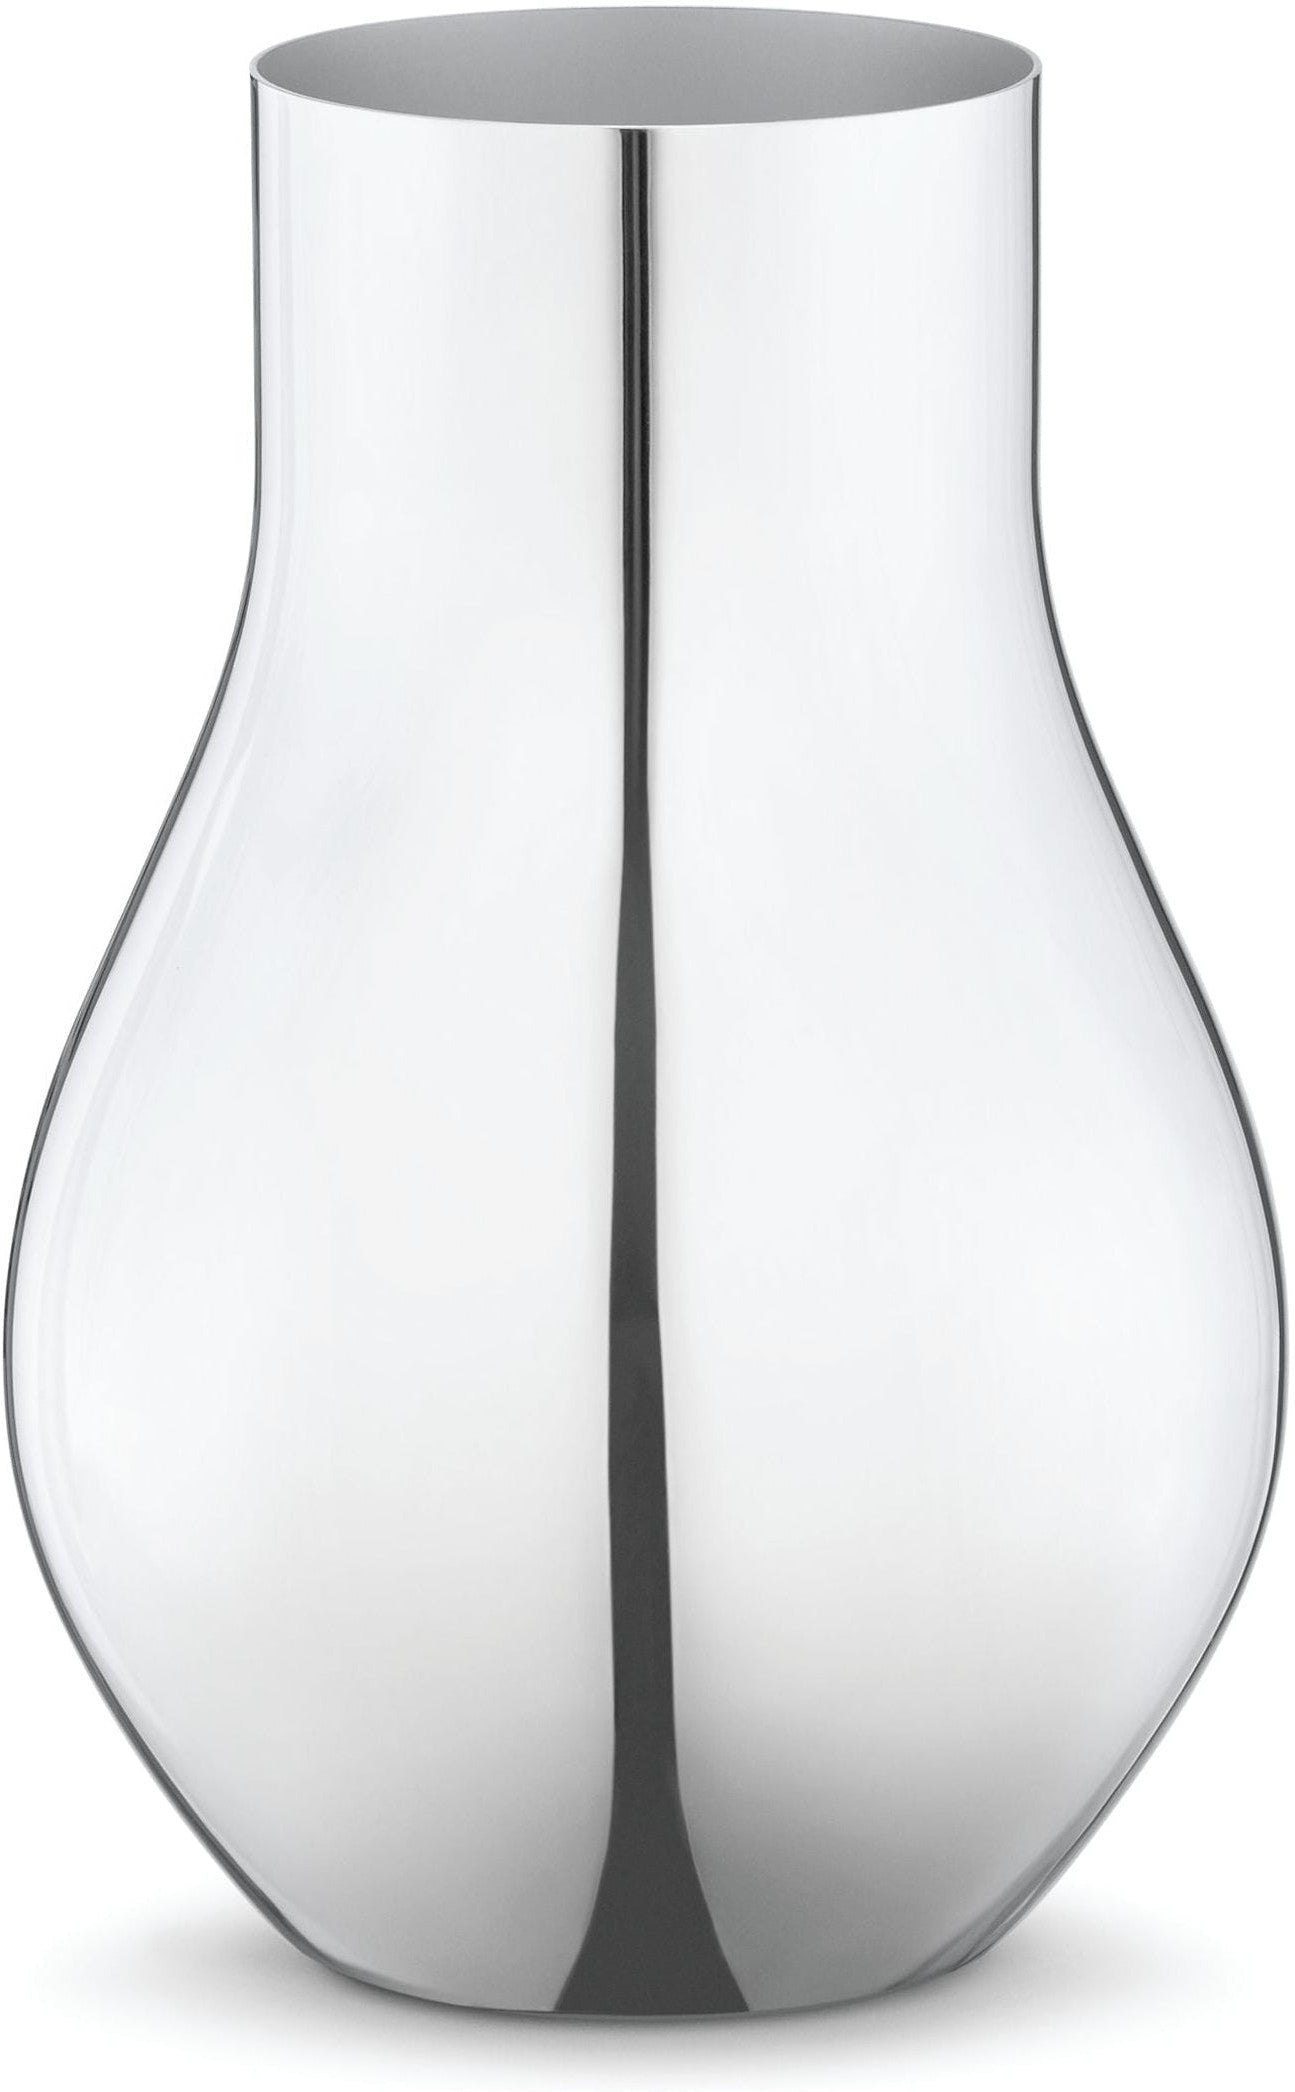 Georg Jensen Cafu Vase rustfritt stål, 22 cm